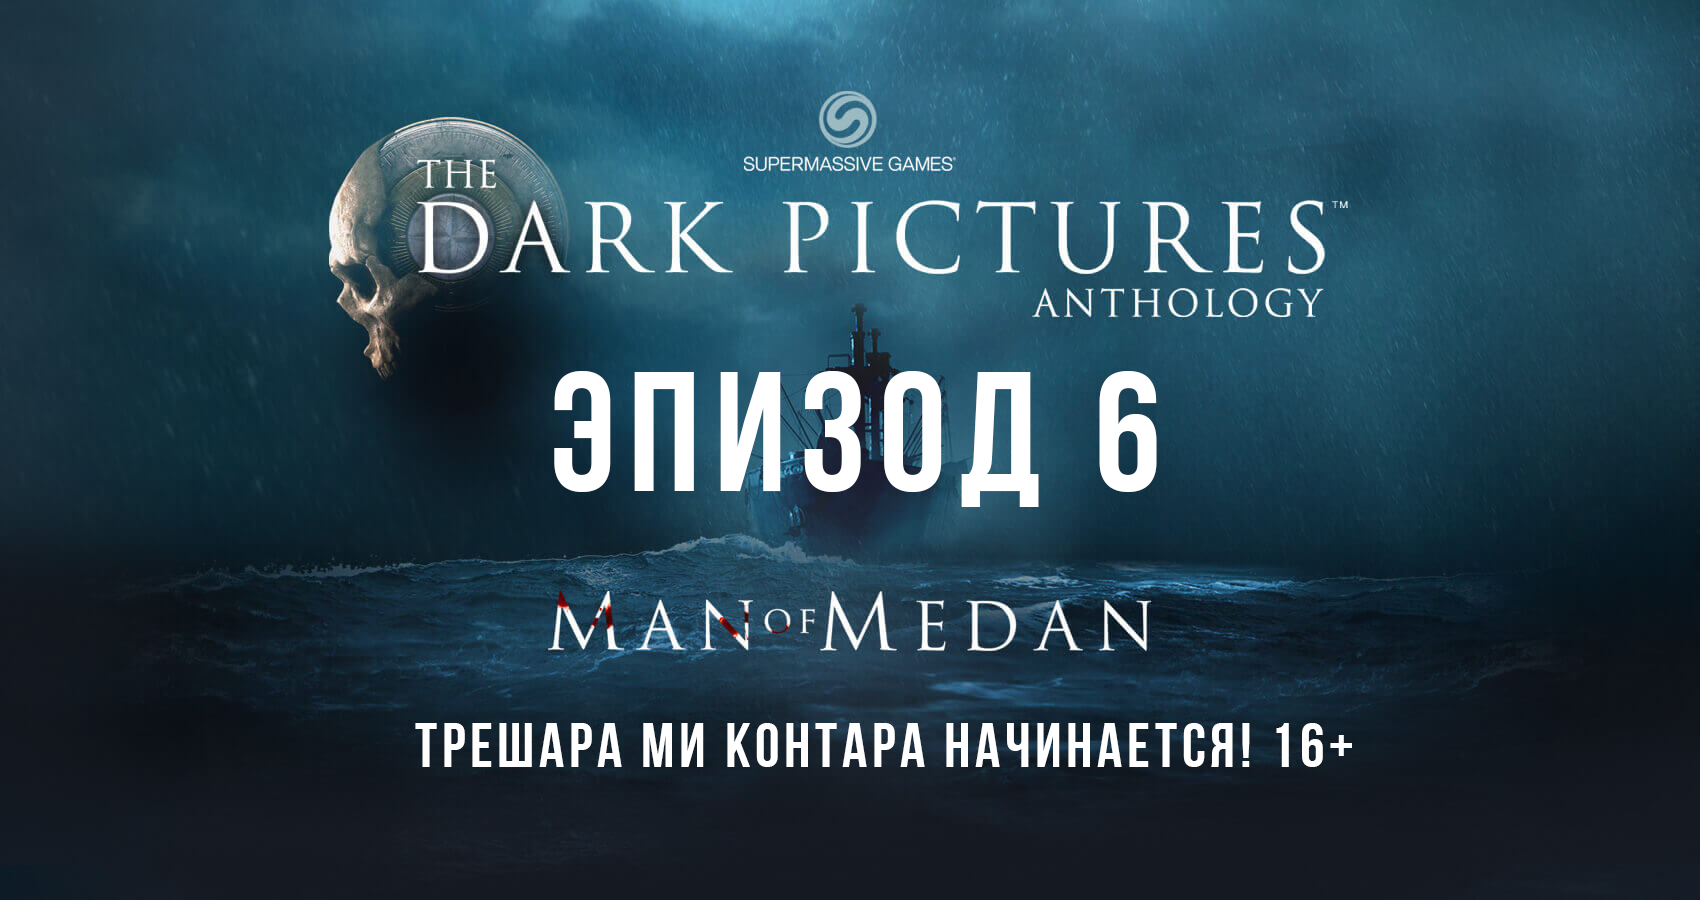 The Dark Pictures: Man of Medan. Эпизод 6. Трешара ми контара! ААА!!!